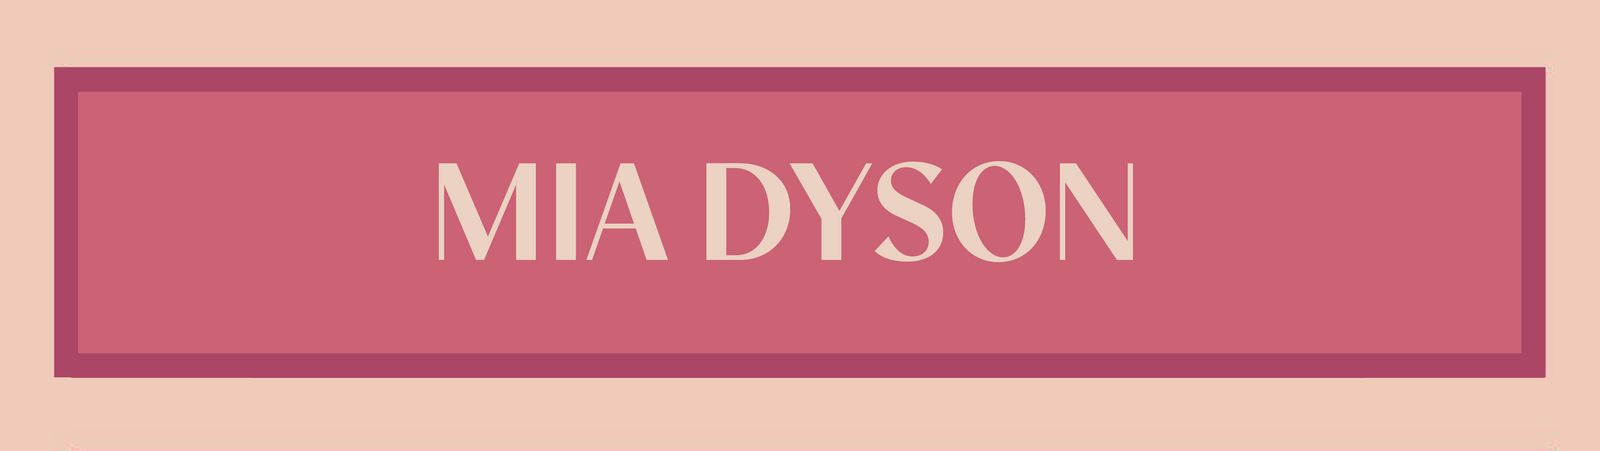 Mia Dyson